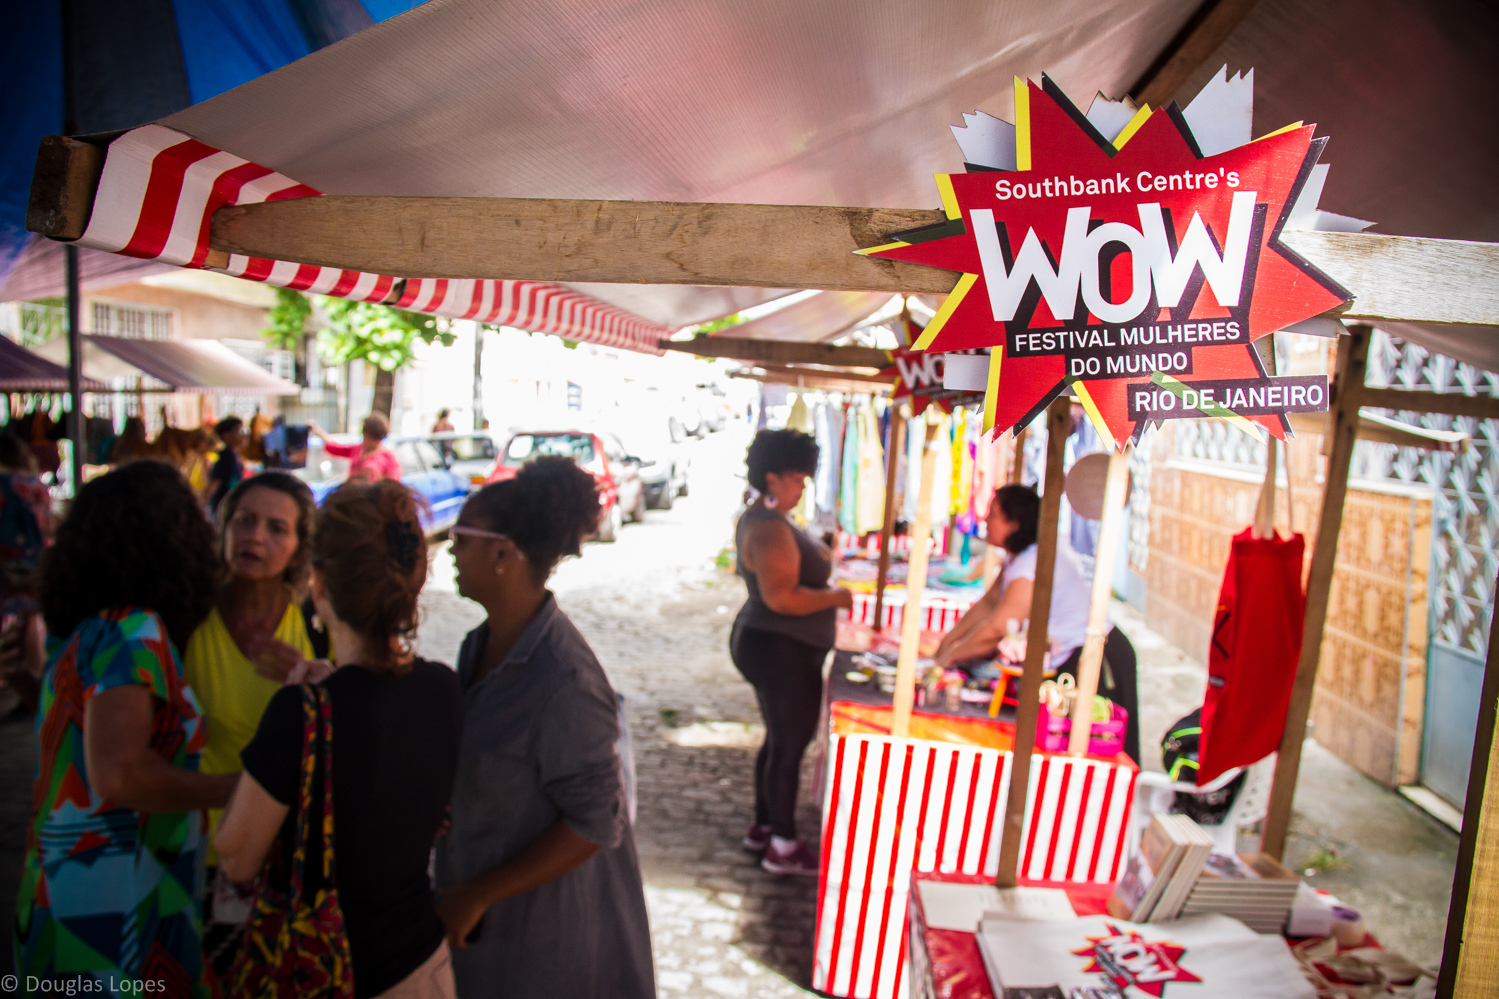 Redes da Maré :: Festival Mulheres do Mundo - WOW será realizado